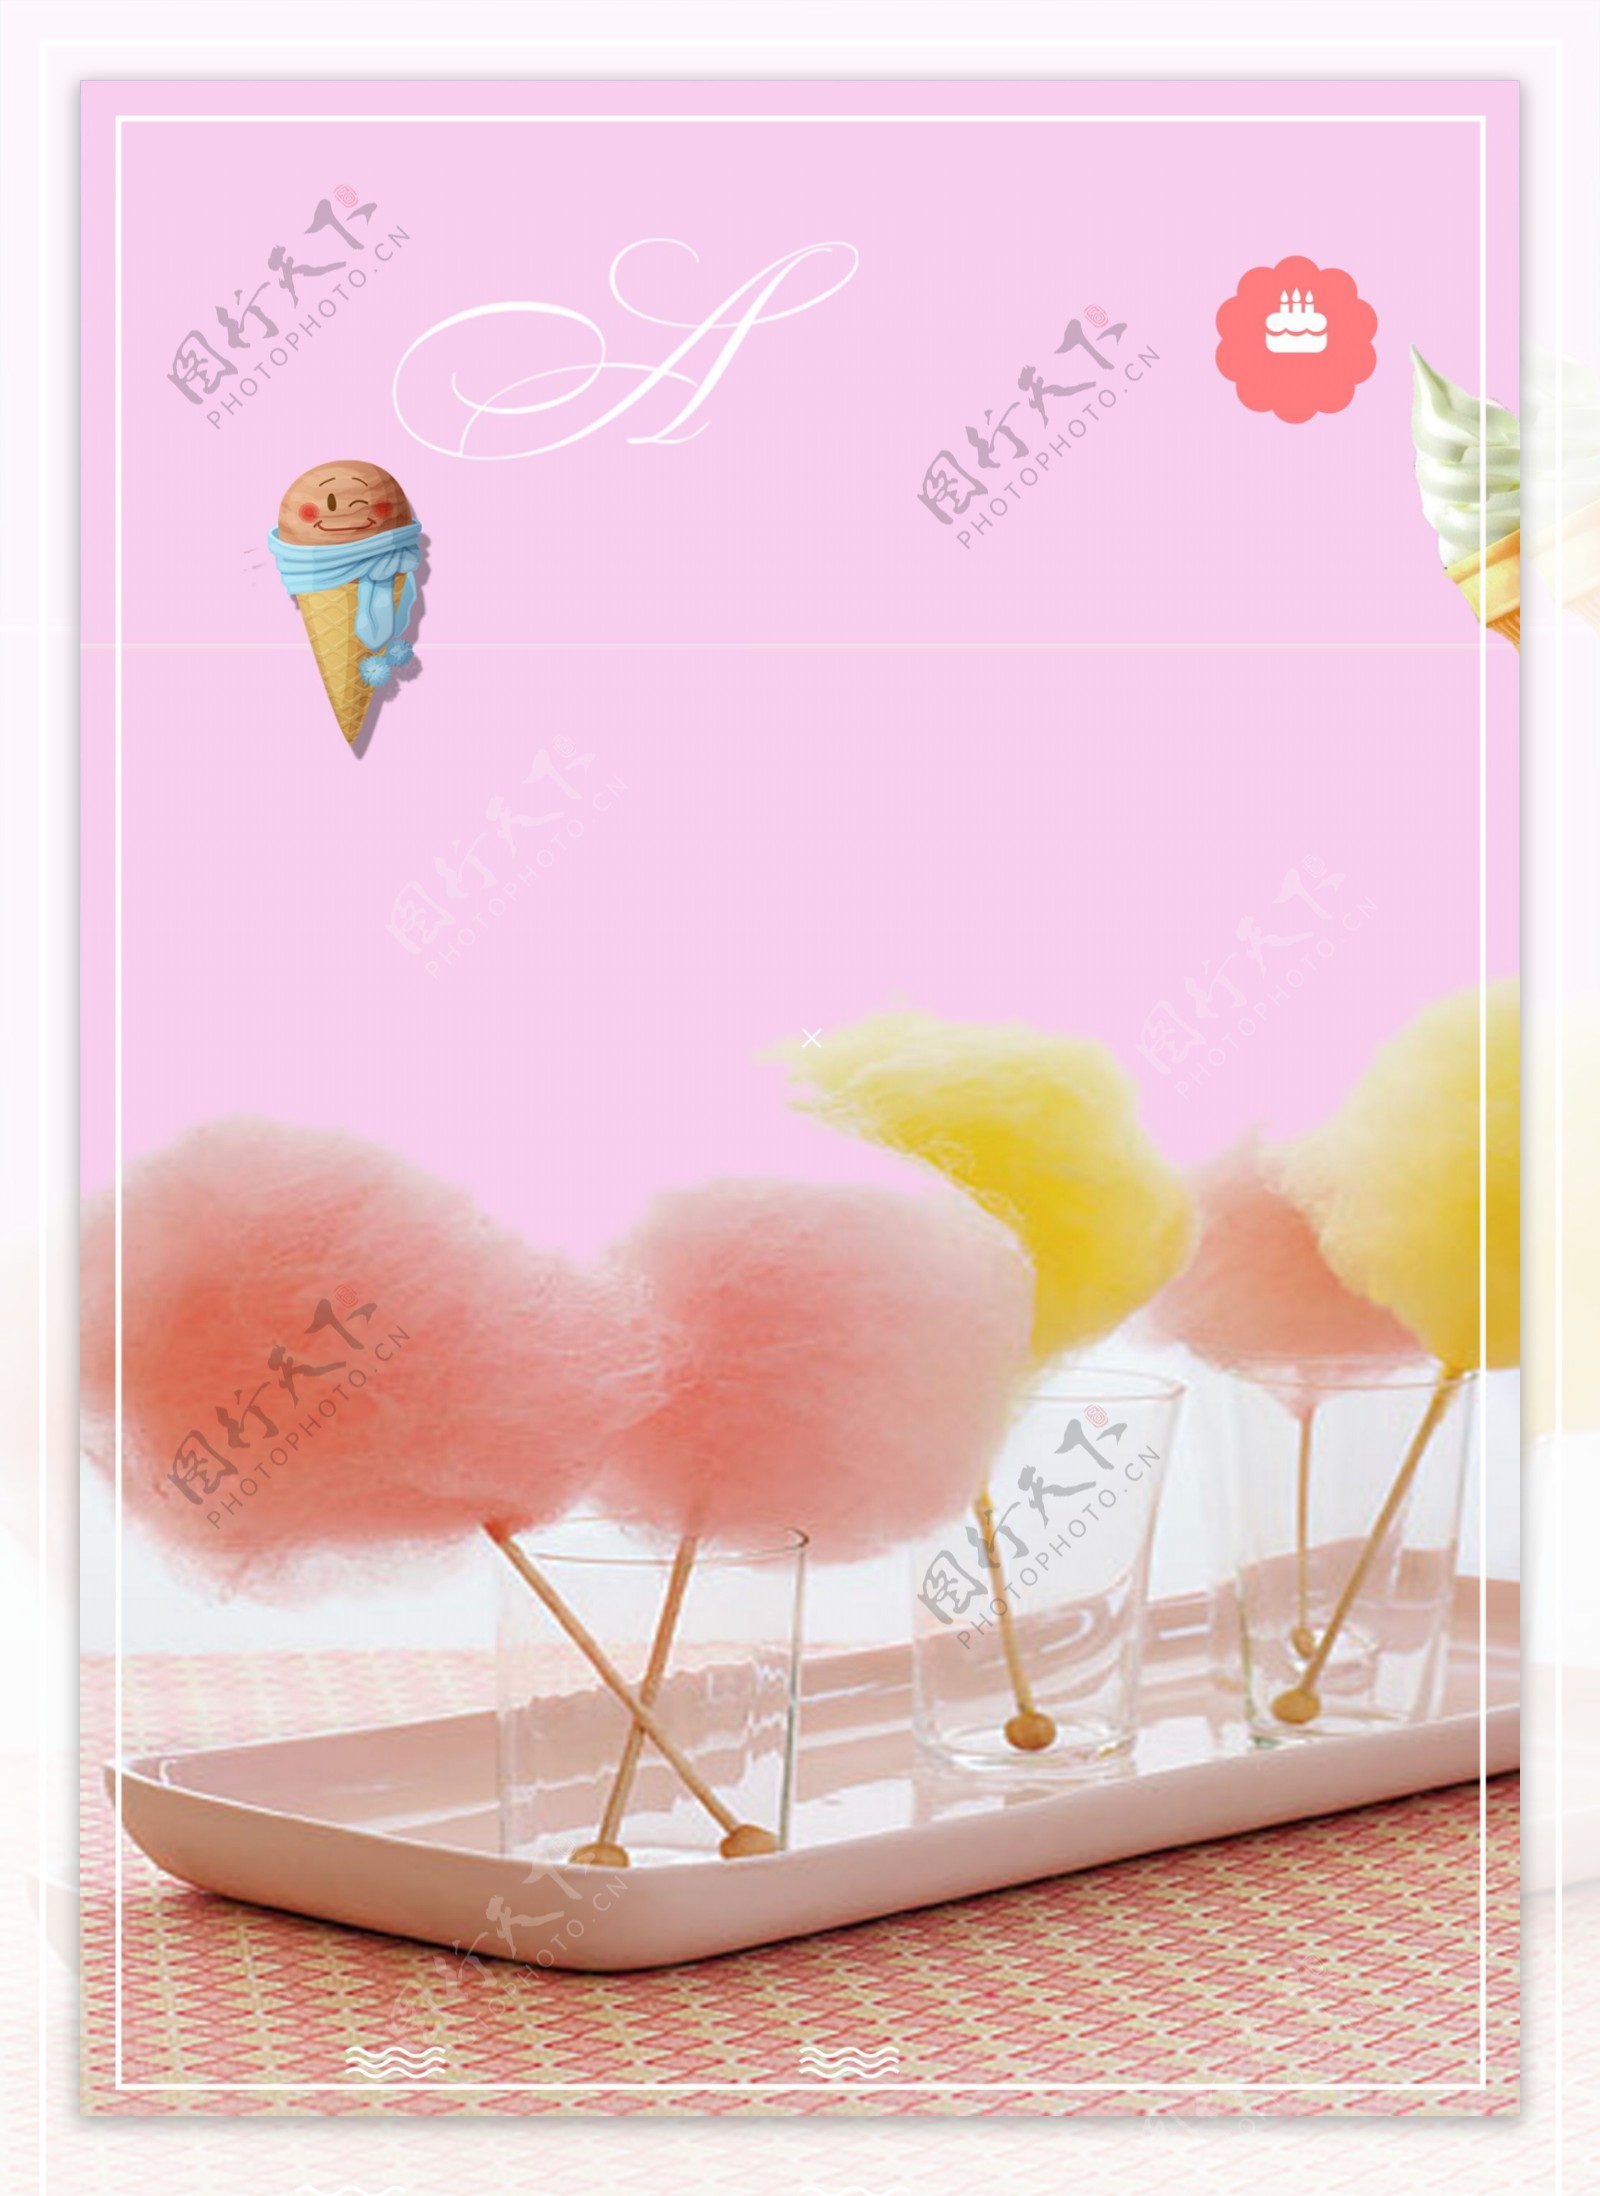 粉色夏日棉花糖海报背景素材